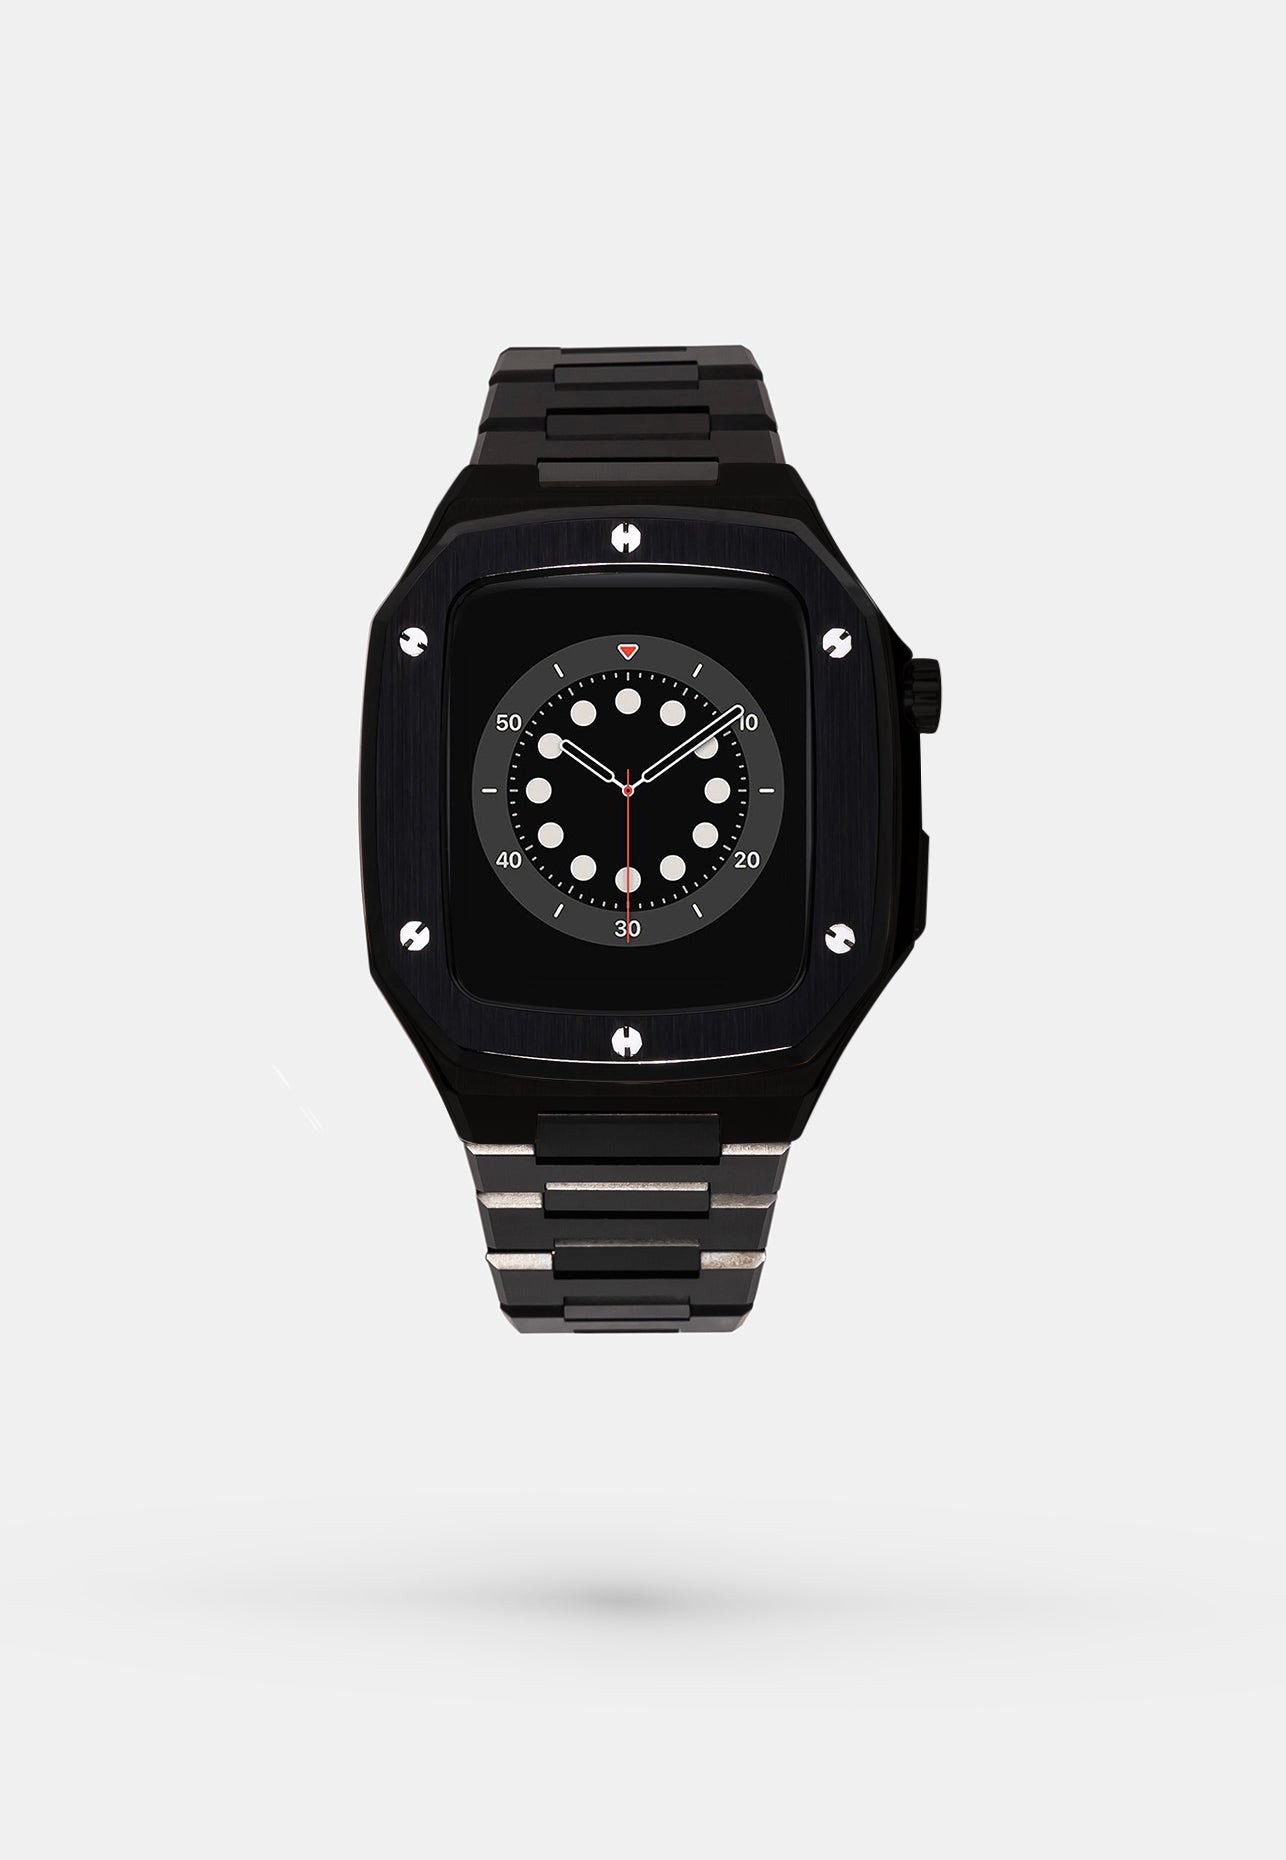 JetBalck - Accessoire Apple Watch - Coque et bracelet  Noir Appel Watch 44mm - avant